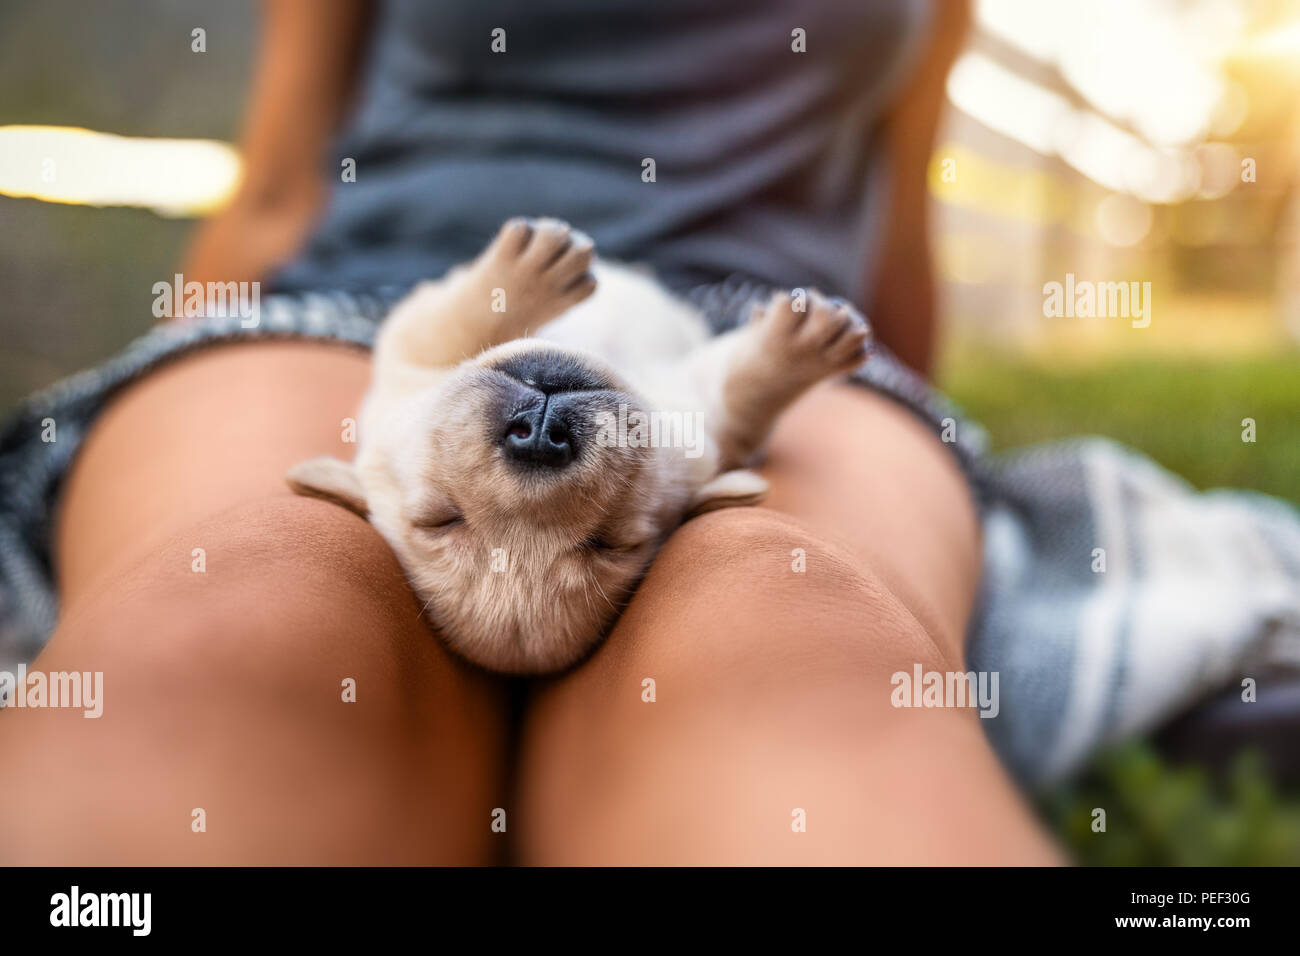 young cute labrador retriever dog puppy Stock Photo